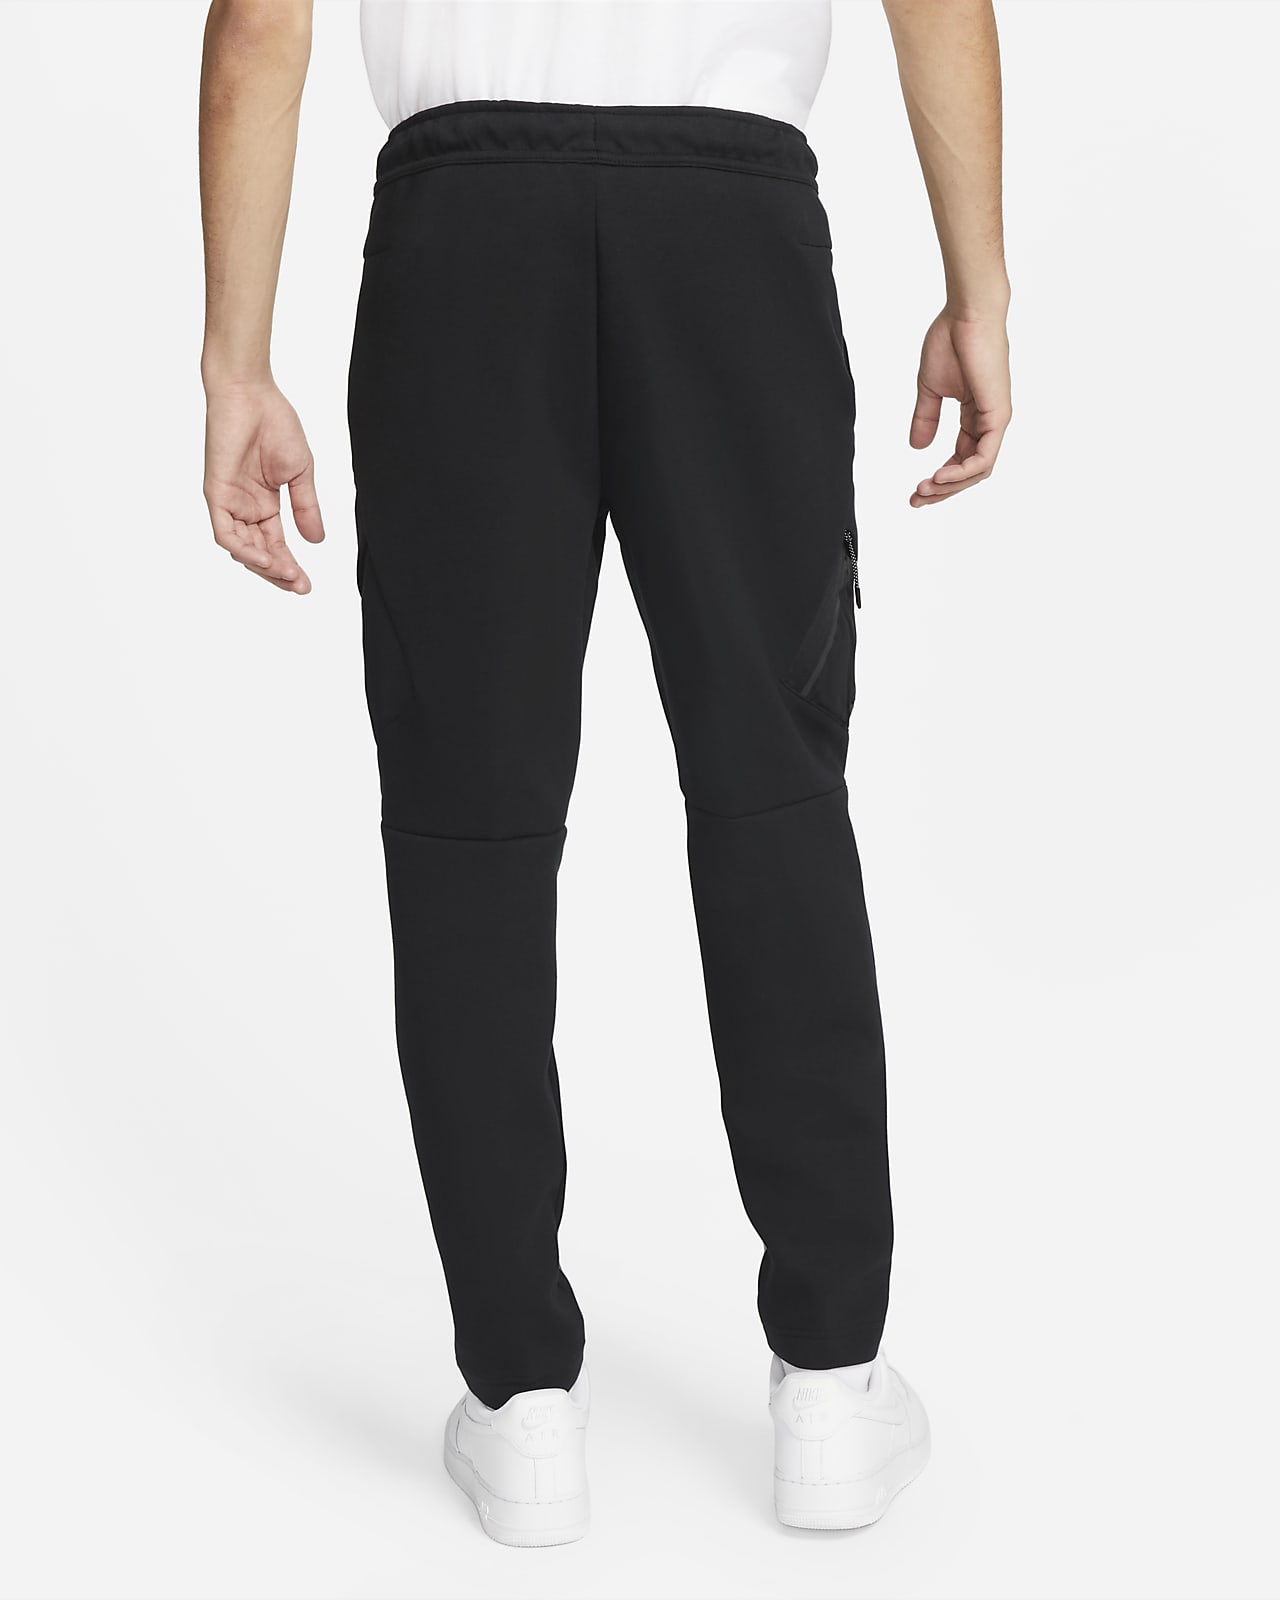 Nike Sportswear Tech Fleece Men's Utility Pants.